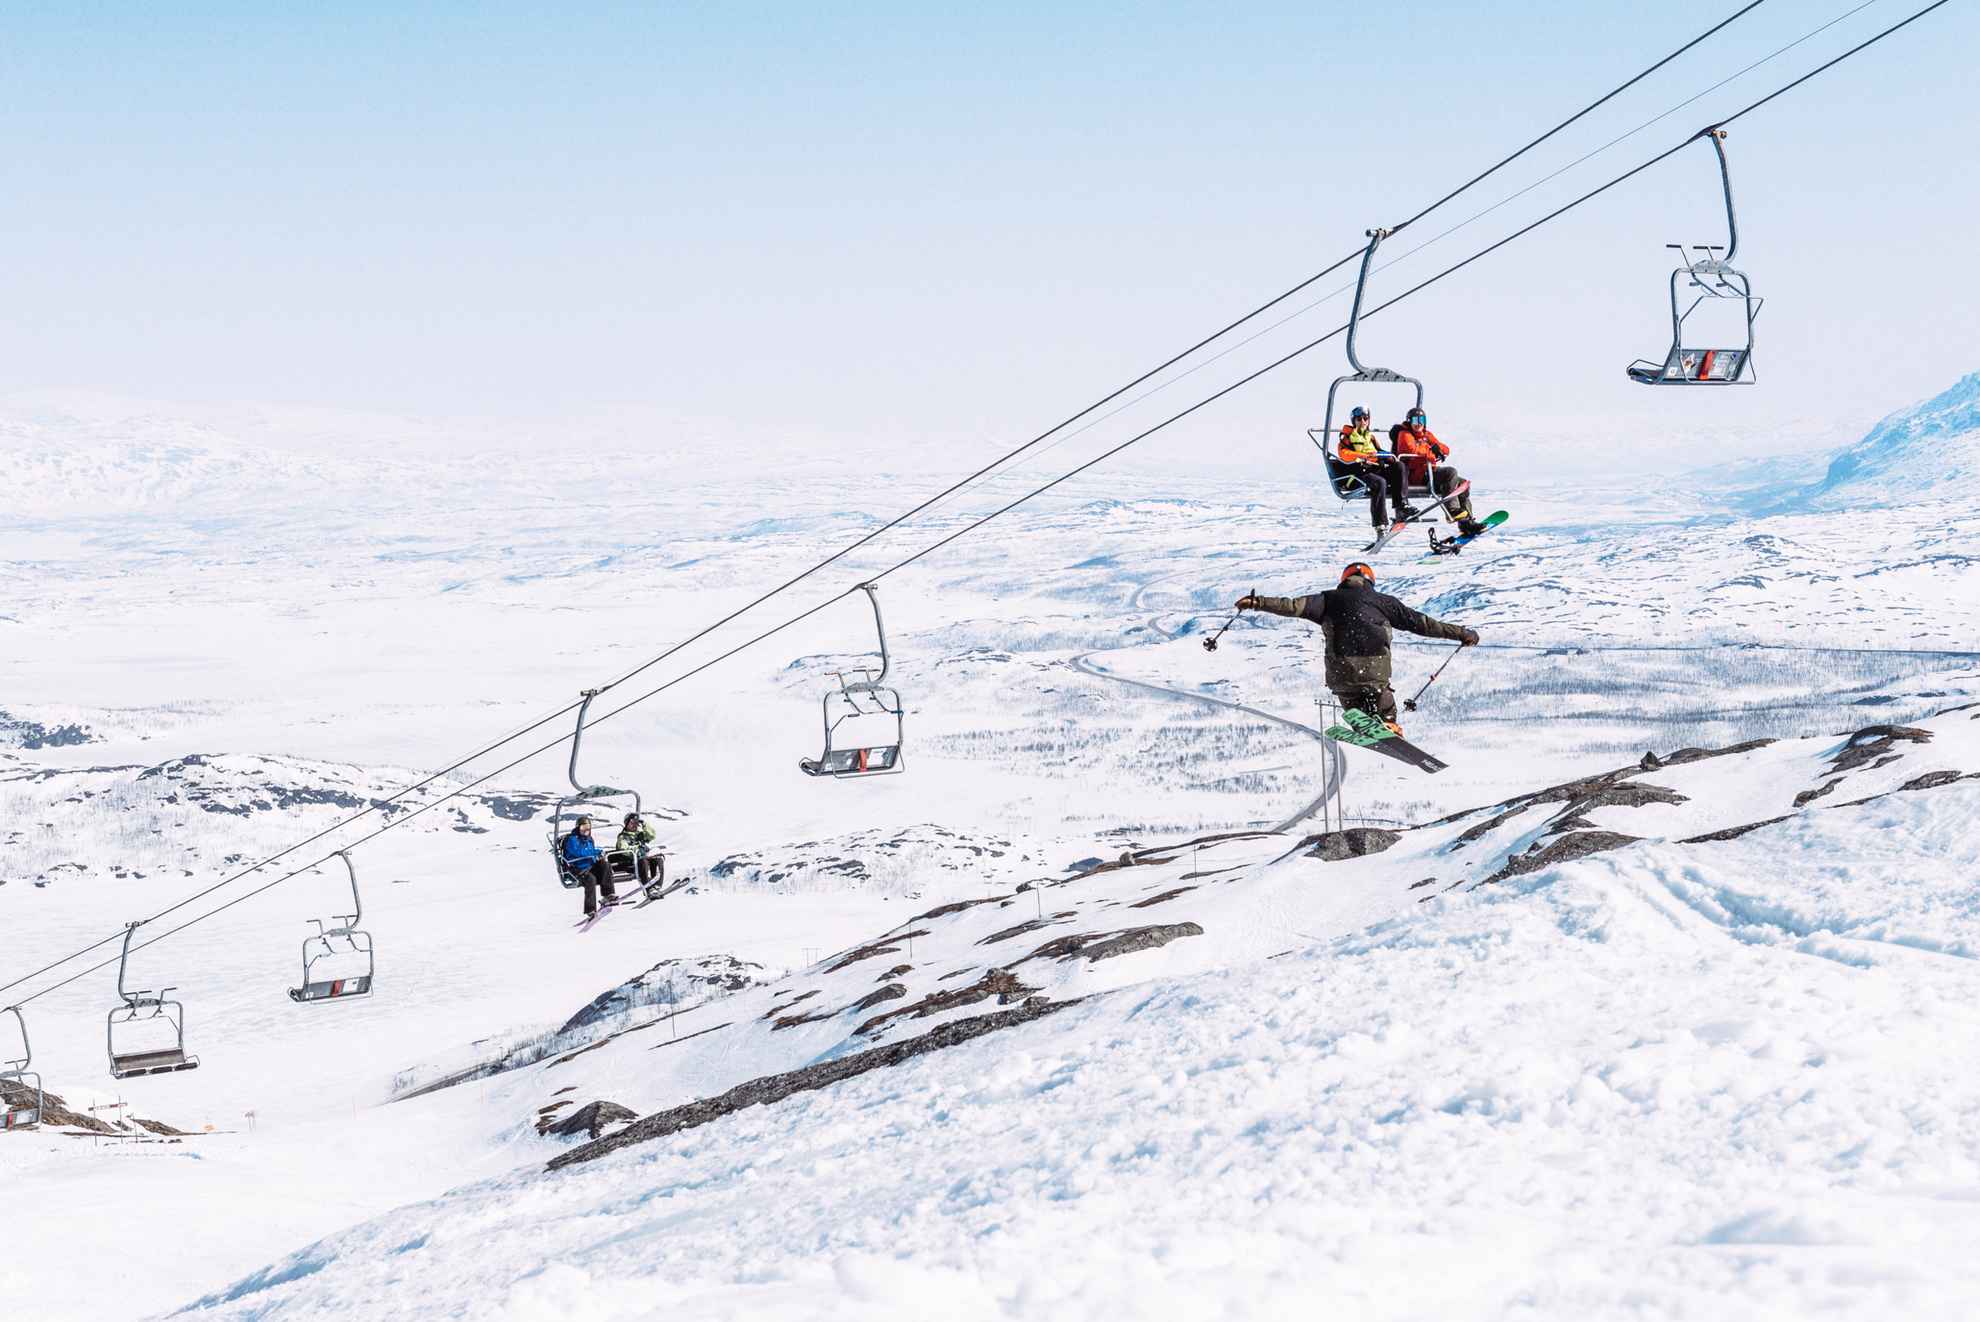 Des personnes sont assises sur un téléski et regardent une personne qui saute avec des skis.